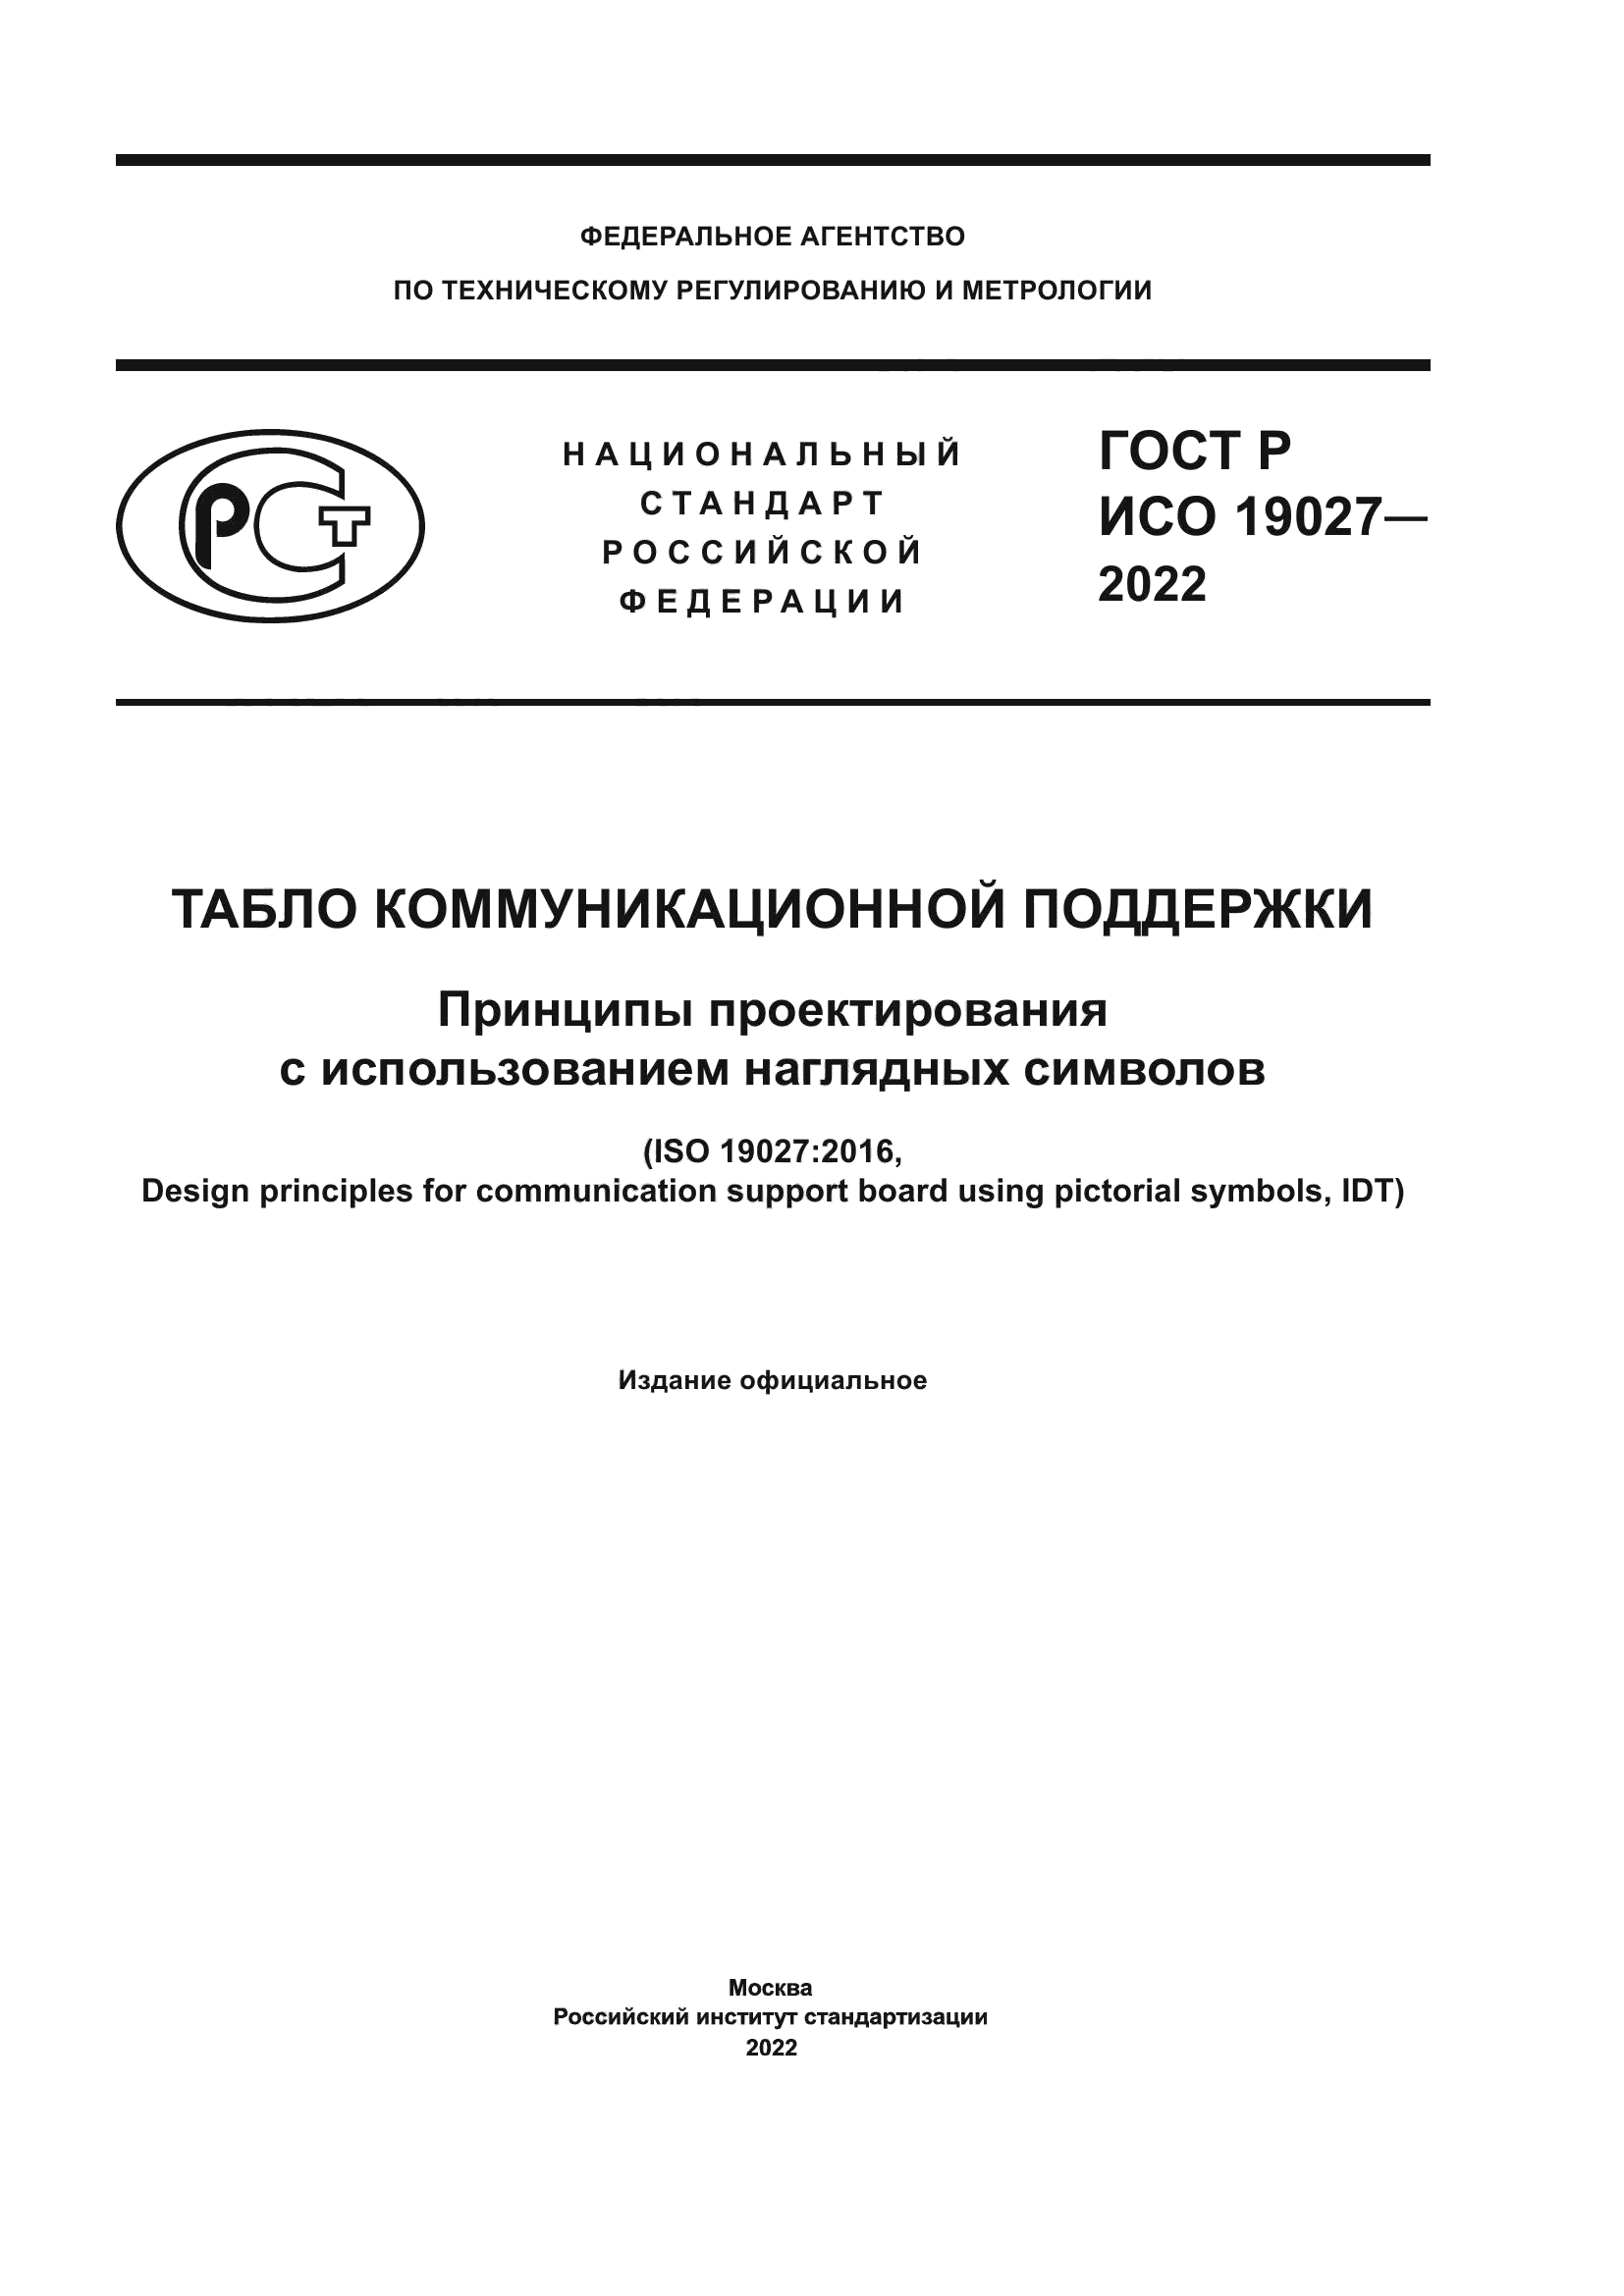 ГОСТ Р ИСО 19027-2022